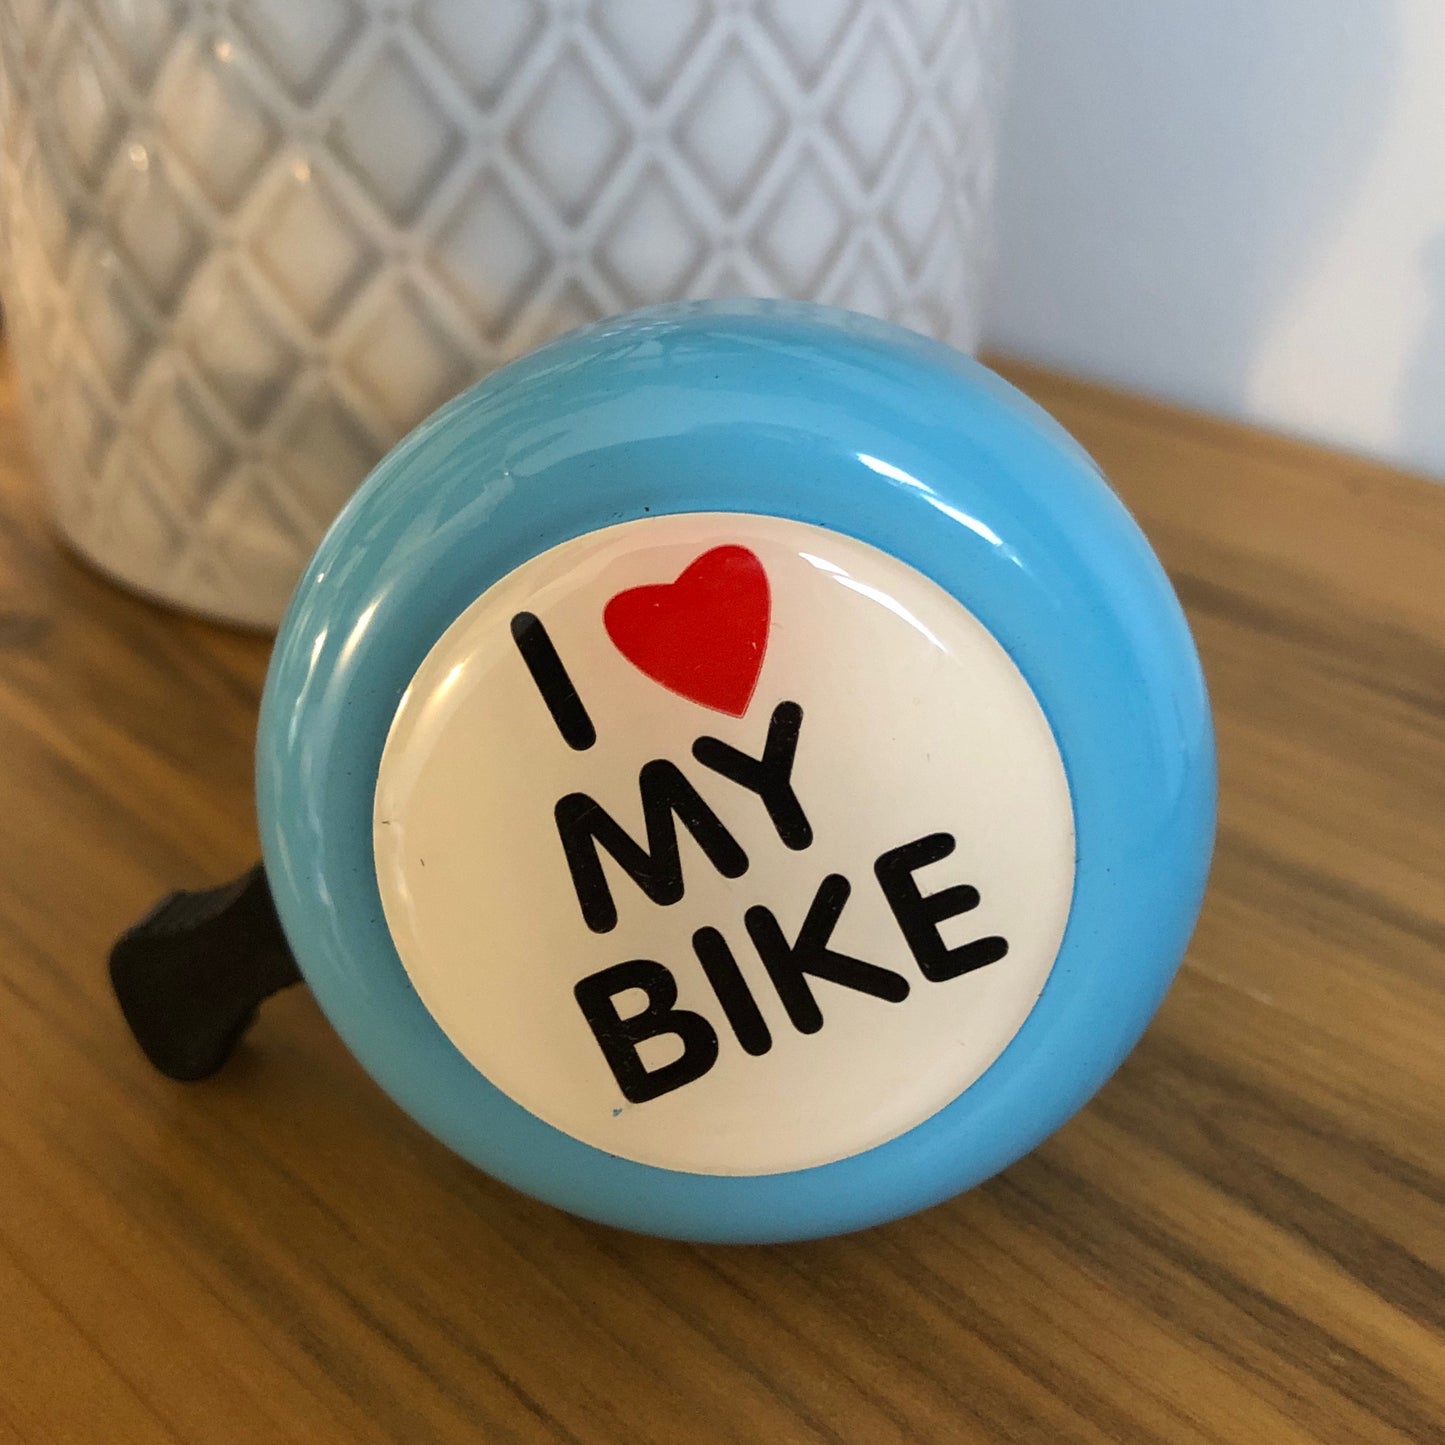 I "Heart" my Bike! Bicycle Bell